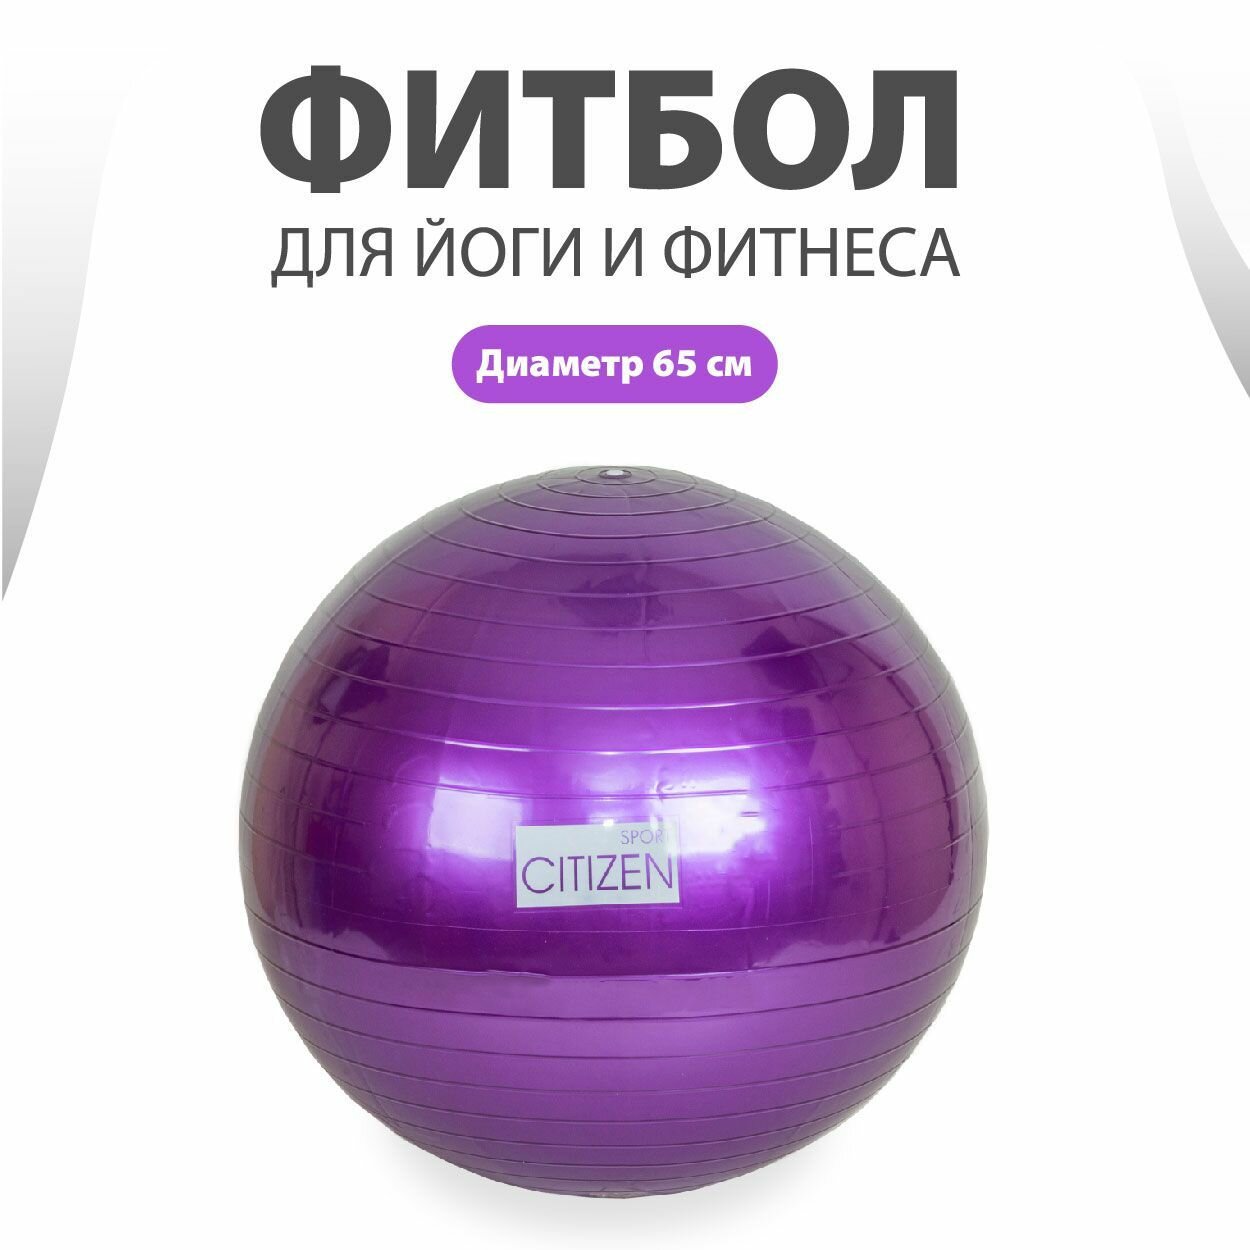 Фитбол для йоги и фитнеса CYB06865 Purple, диаметр 65 см, максимальная нагрузка 150 кг / Гимнастический мяч / Мяч для фитнеса